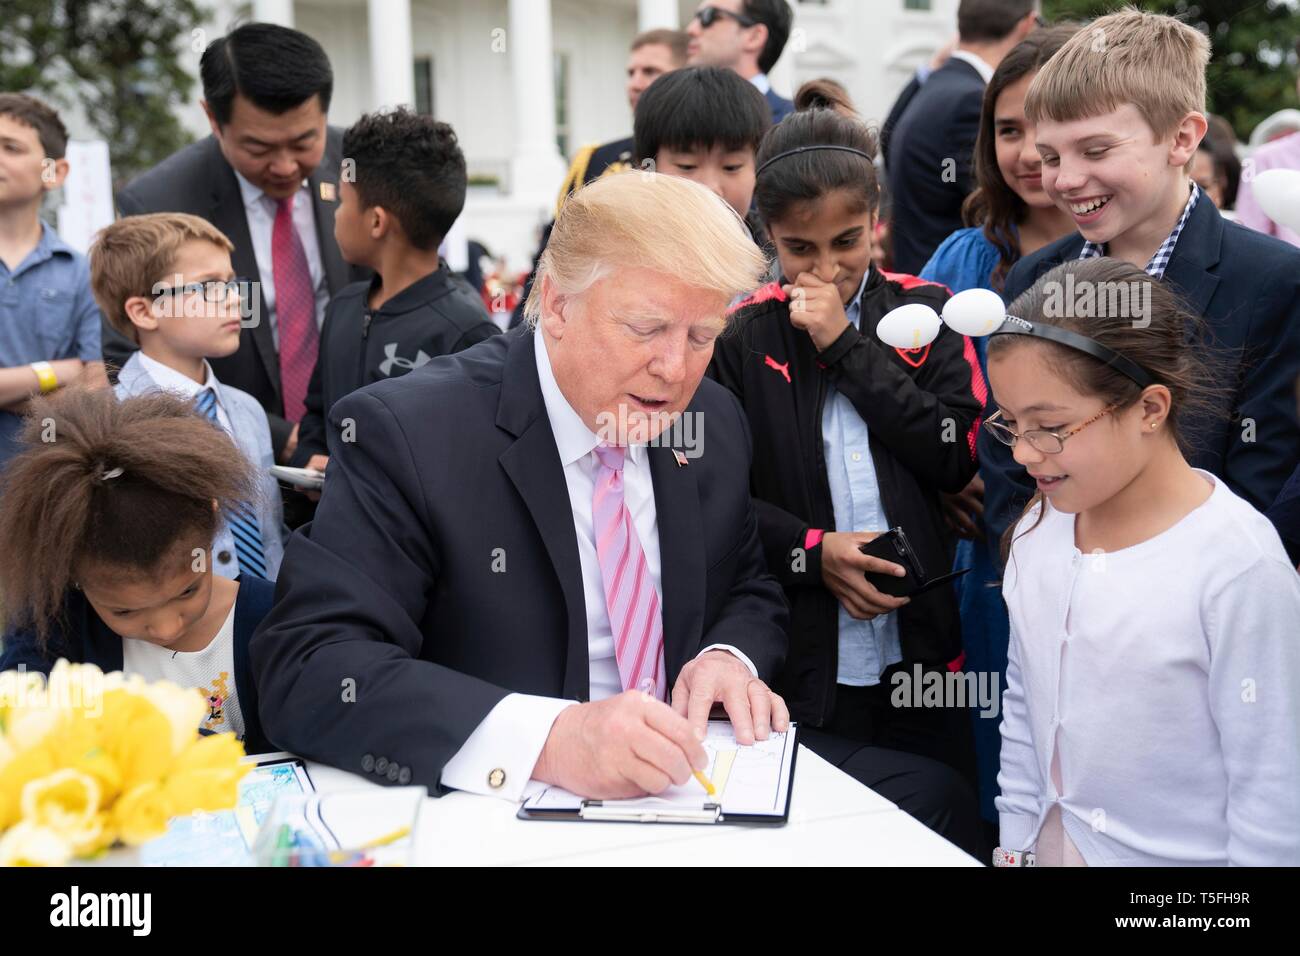 U.S presidente Donald Trump unisce i bambini ad una tabella di colorazione durante il White House Easter Egg Roll evento sul prato Sud della Casa Bianca Aprile 22, 2019 a Washington, DC. Questa è la 141anno per le relazioni annuali di primavera evento. Foto Stock